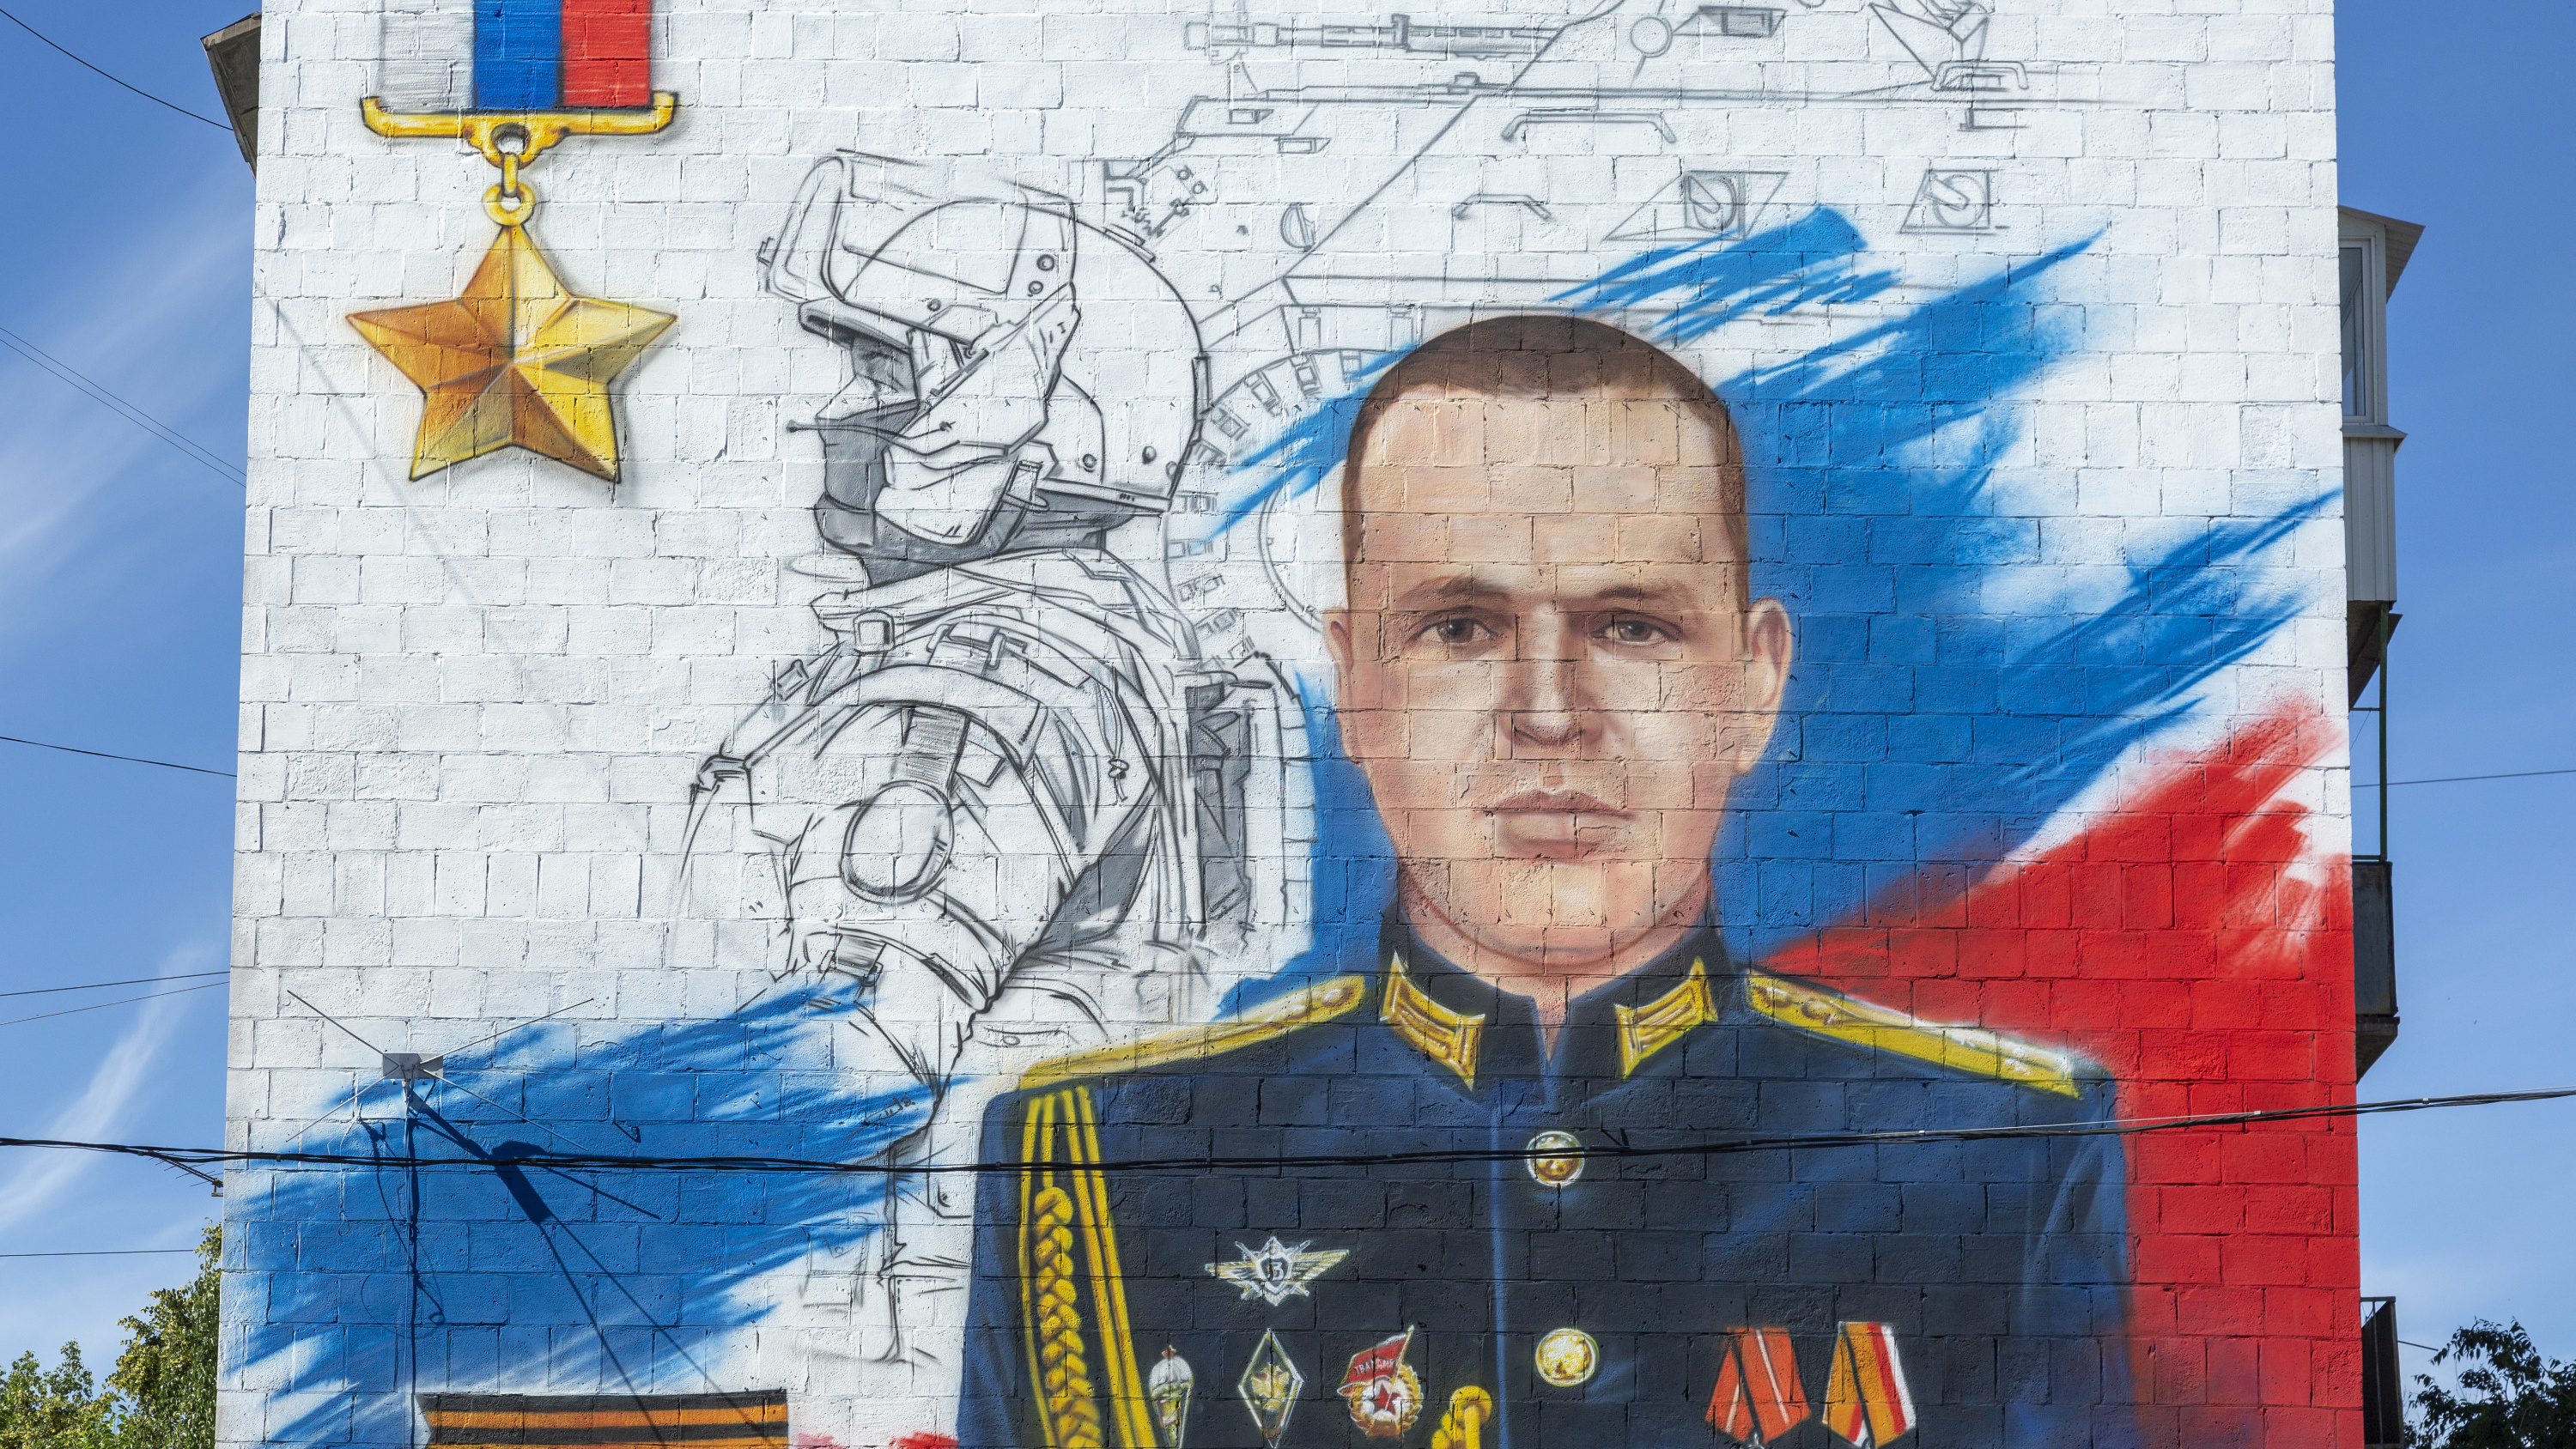 Муралы с изображением героев ДНР В Мариуполе